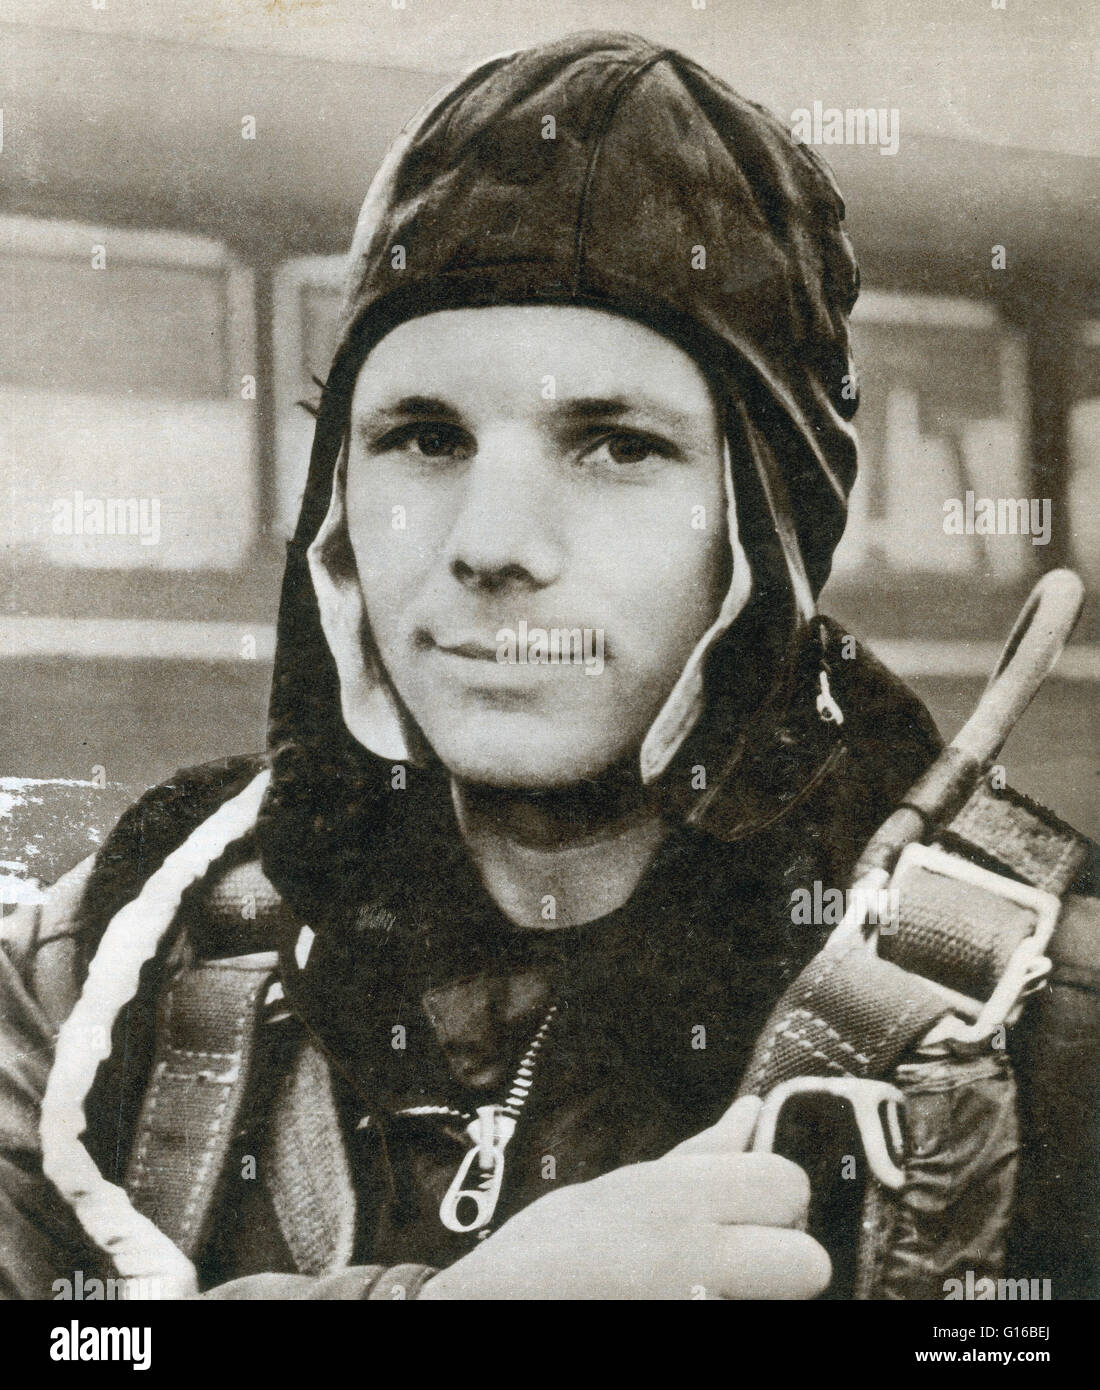 Yuri Alekseyevich Gagarin (9. März 1934 - 27. März 1968) war ein sowjetischer Pilot und Kosmonaut. Nach seinem Abschluss an einer Fachschule im Jahre 1955, wurde er von der sowjetischen Armee eingezogen und an der ersten Tschkalow Air Force Pilot School. Im Jahre 1960, nach viel se Stockfoto